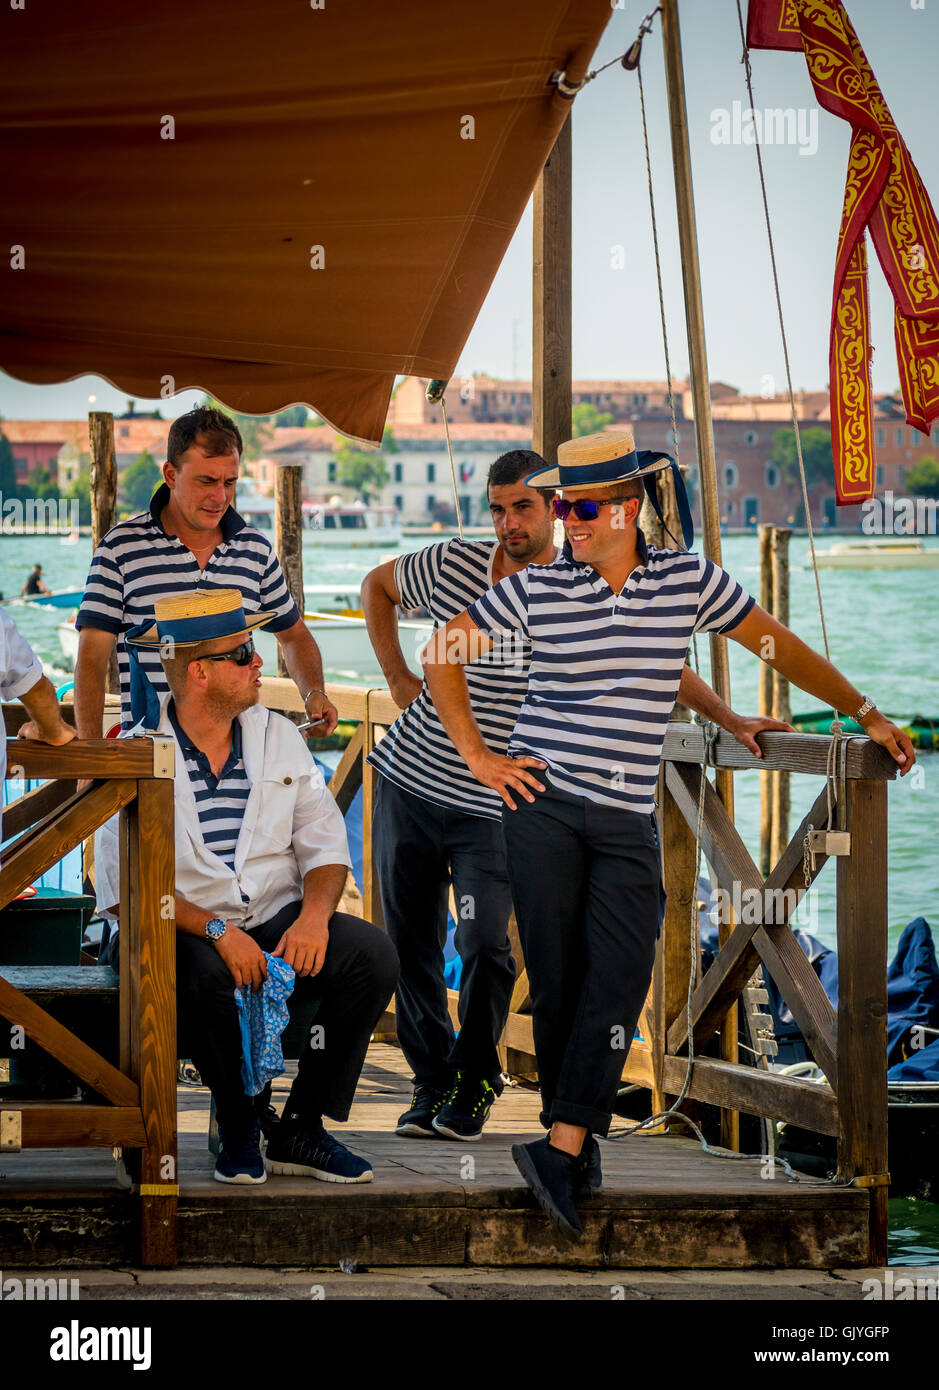 4 männliche Gondolieri tragen traditionelle gestreift Tops und Stroh Bootsfahrer hüten, warten auf Fahrgäste. Venedig, Italien. Stockfoto